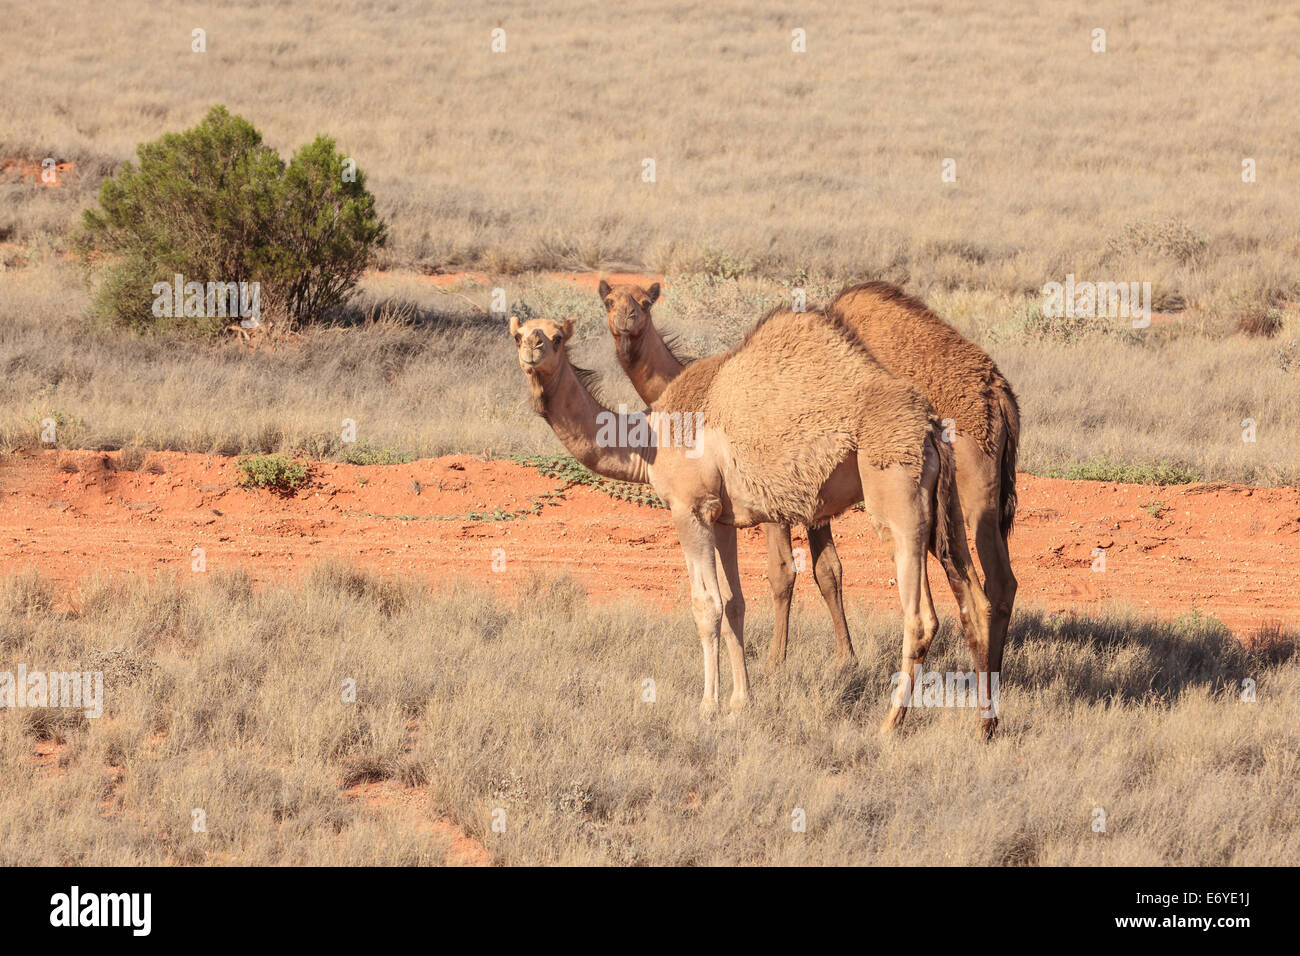 Dos atentos marrón rojo camellos en el South Australian Outback contra un fondo de color rojo marrón marchito suelo y vegetación Foto de stock